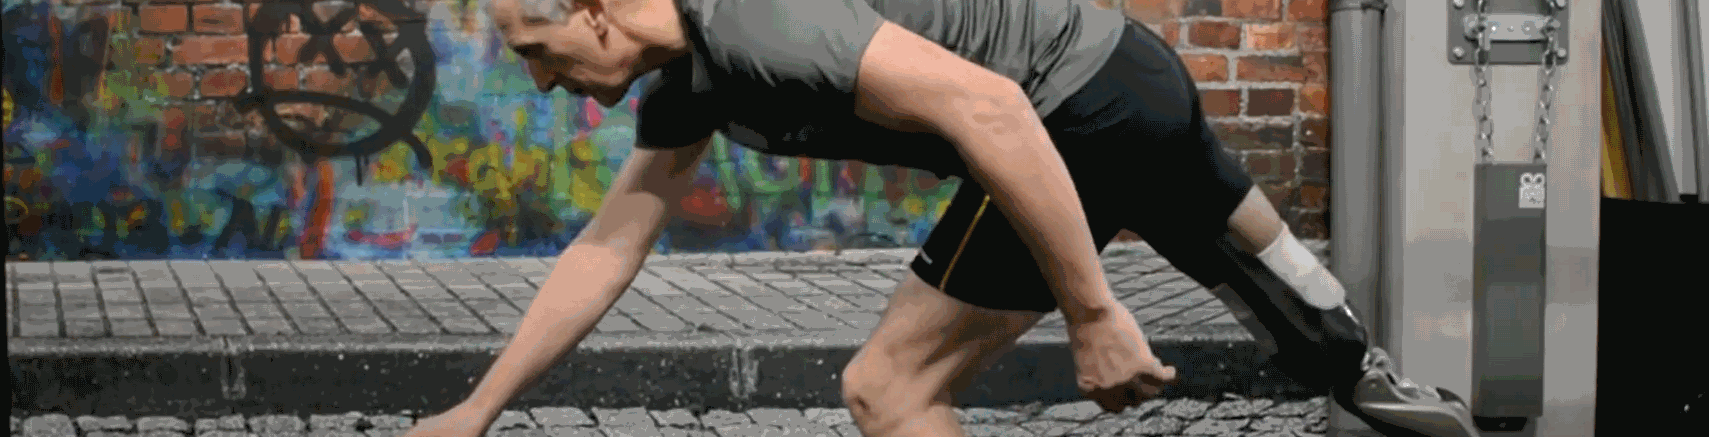 Leren hardlopen met een prothese